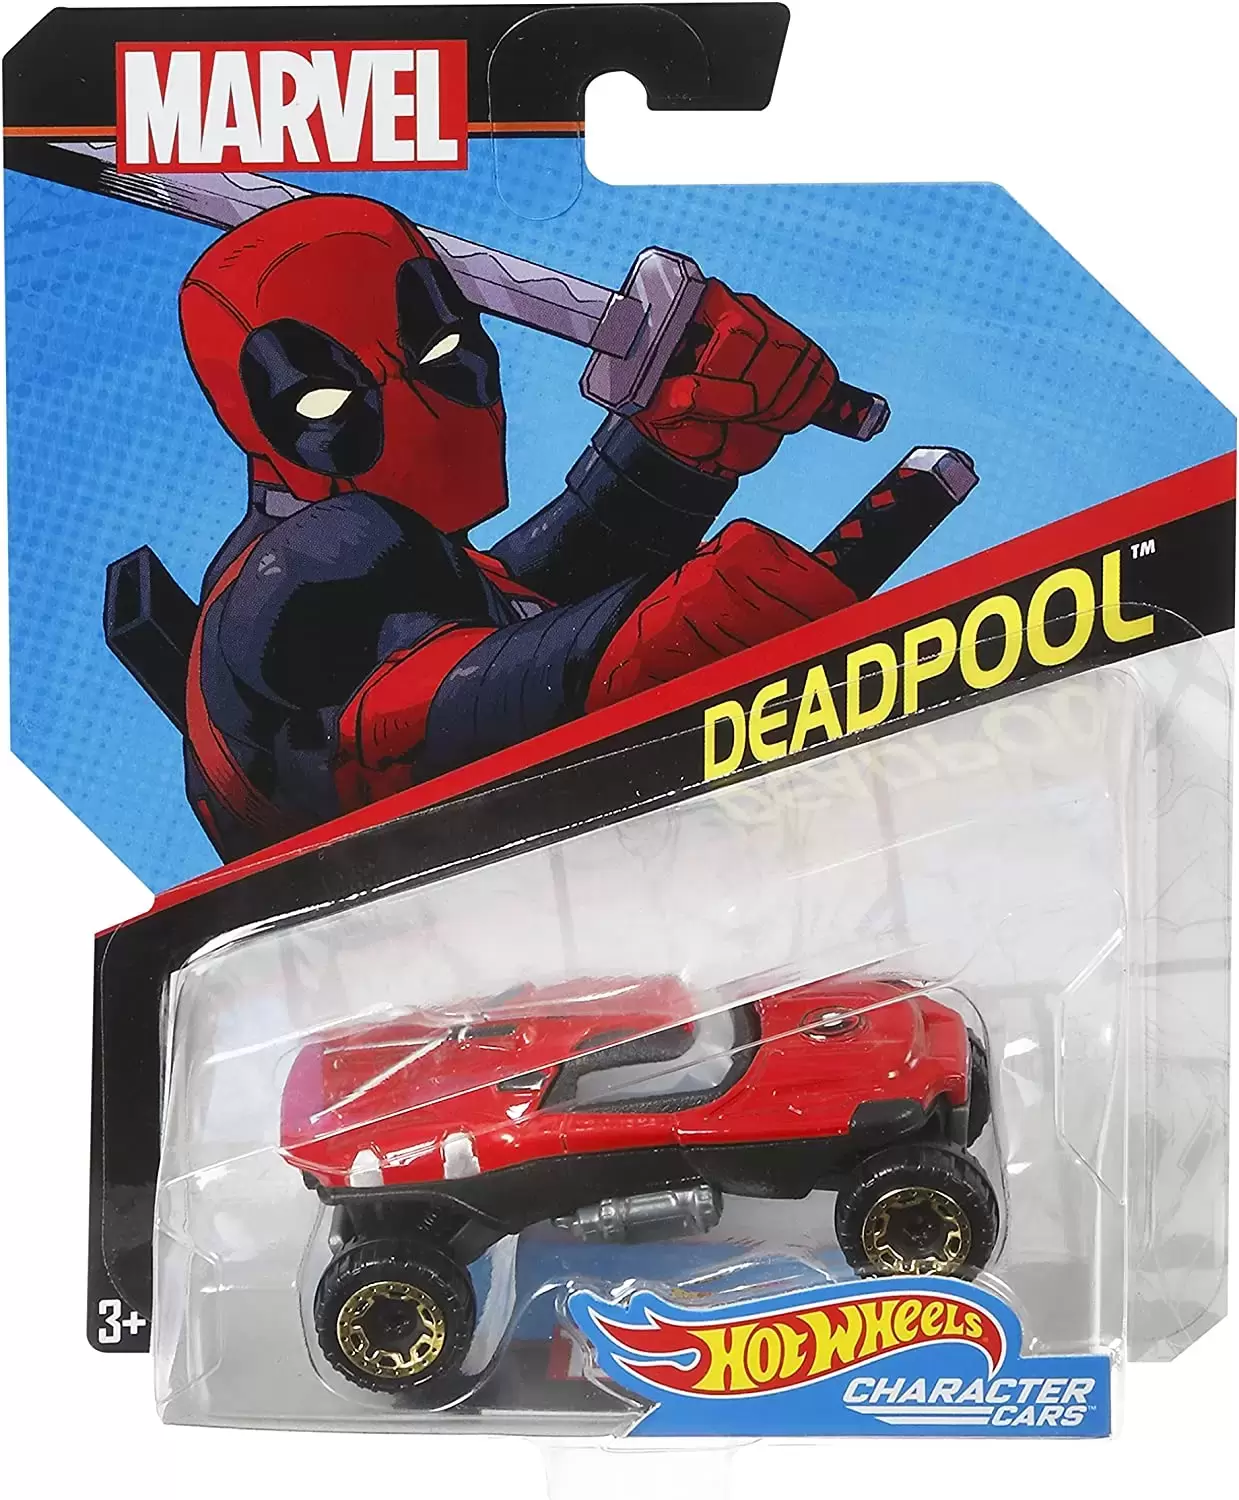 Marvel Character Cars - Deadpool